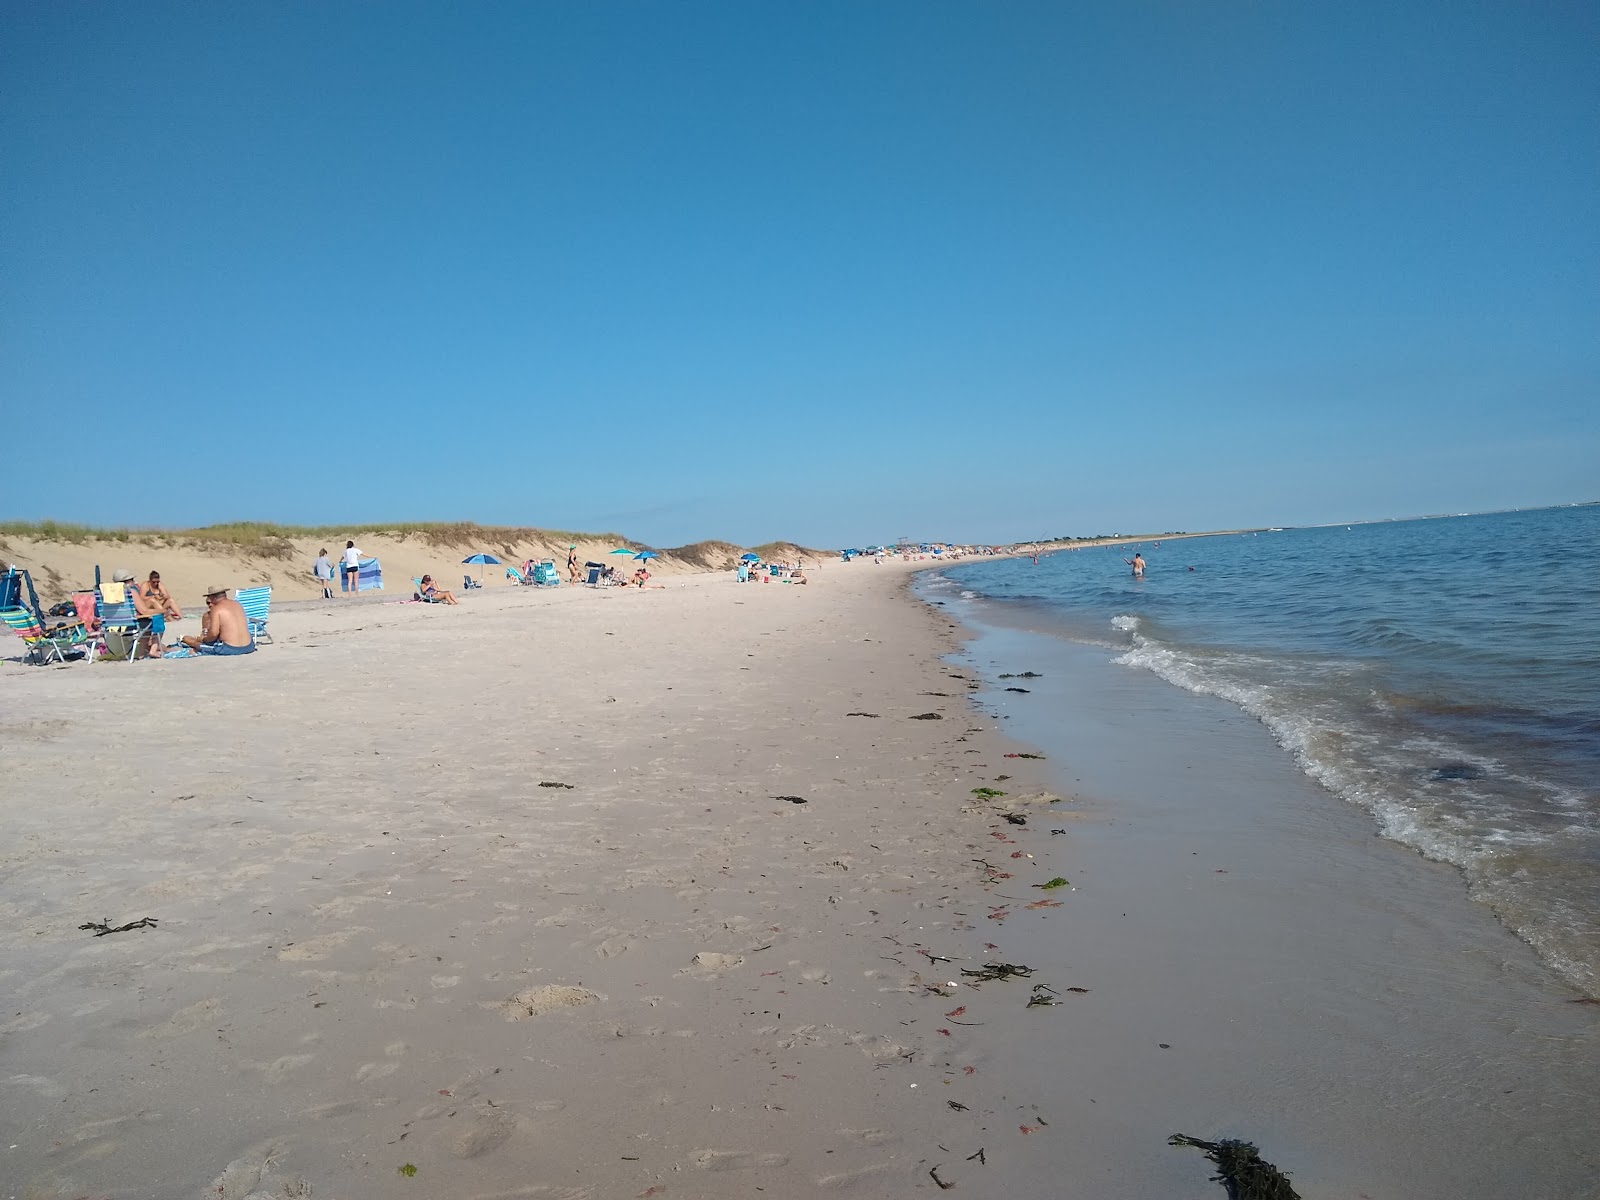 Fotografie cu Hardings beach cu plajă spațioasă